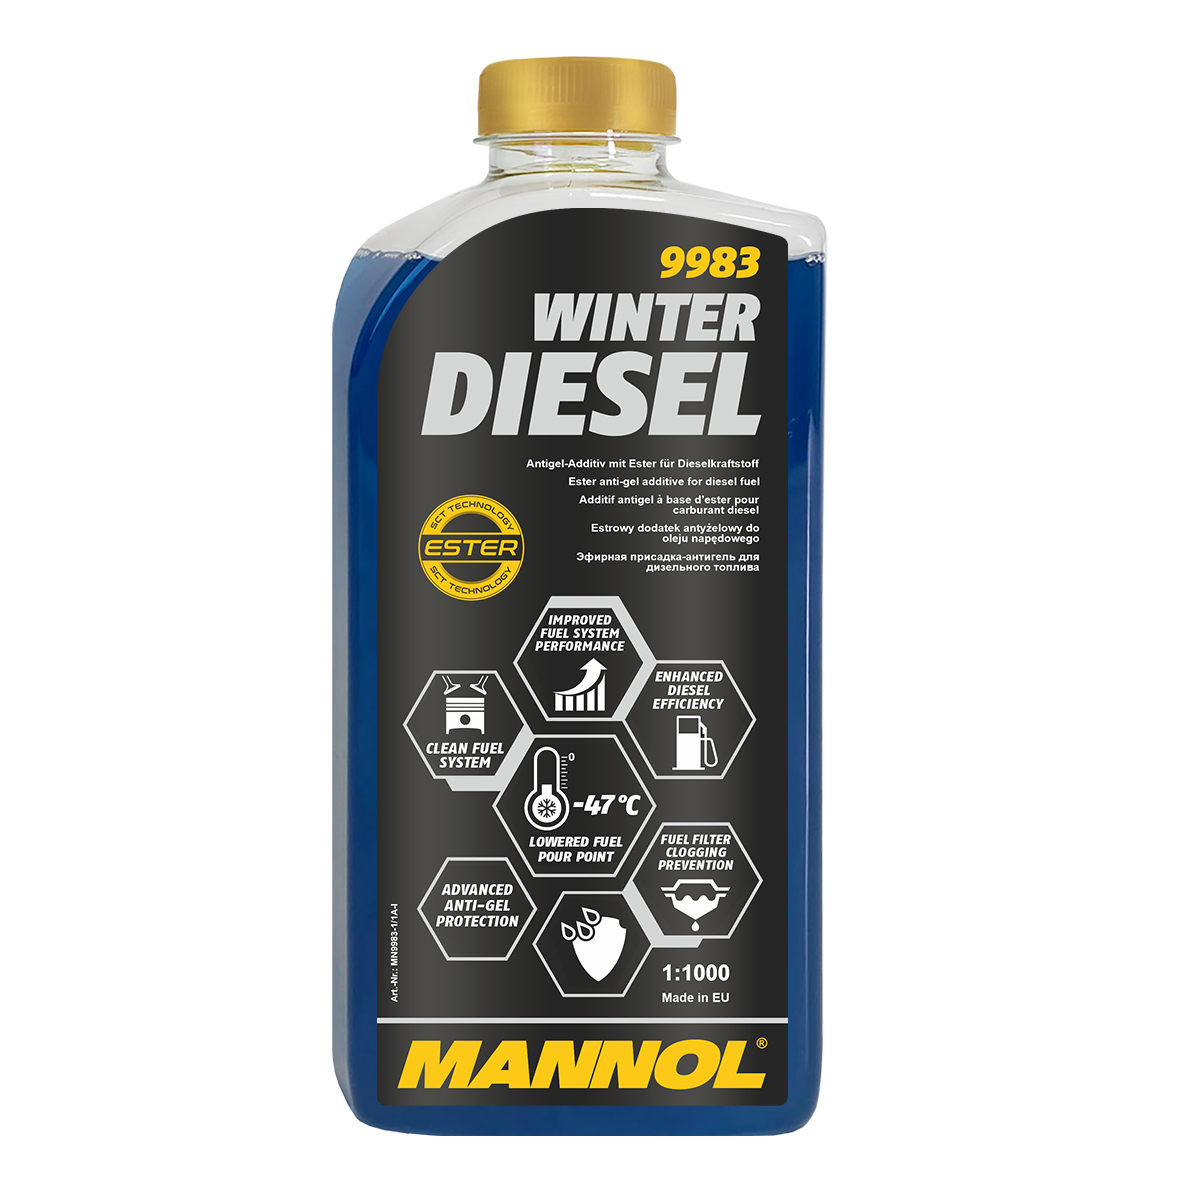 Mannol 9983 Winter Diesel 1:1000 Additiv 1 Liter